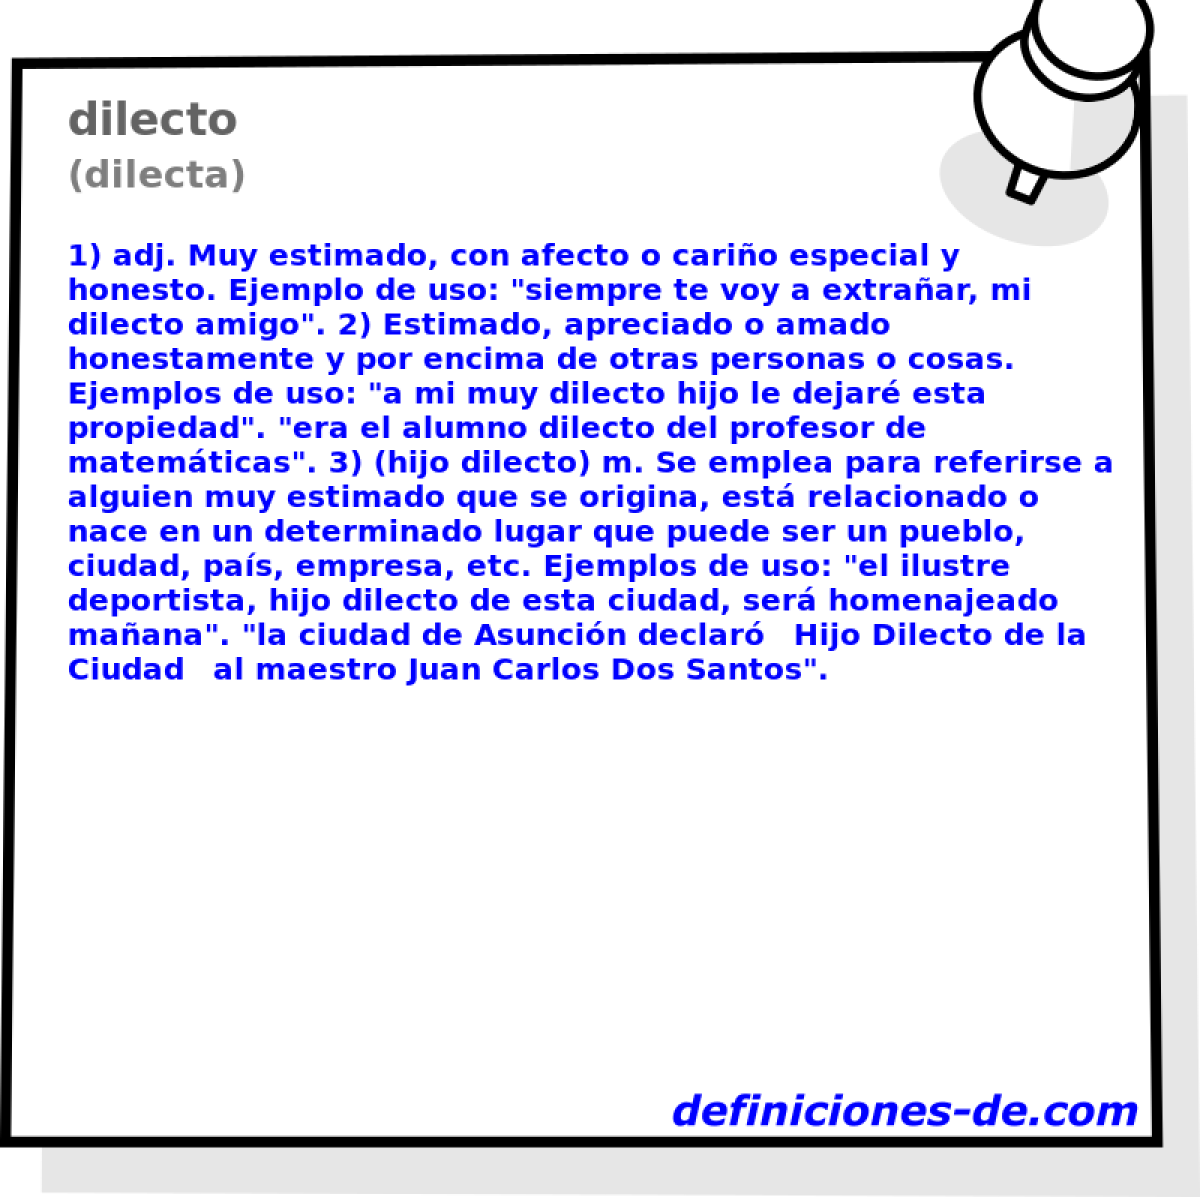 dilecto (dilecta)